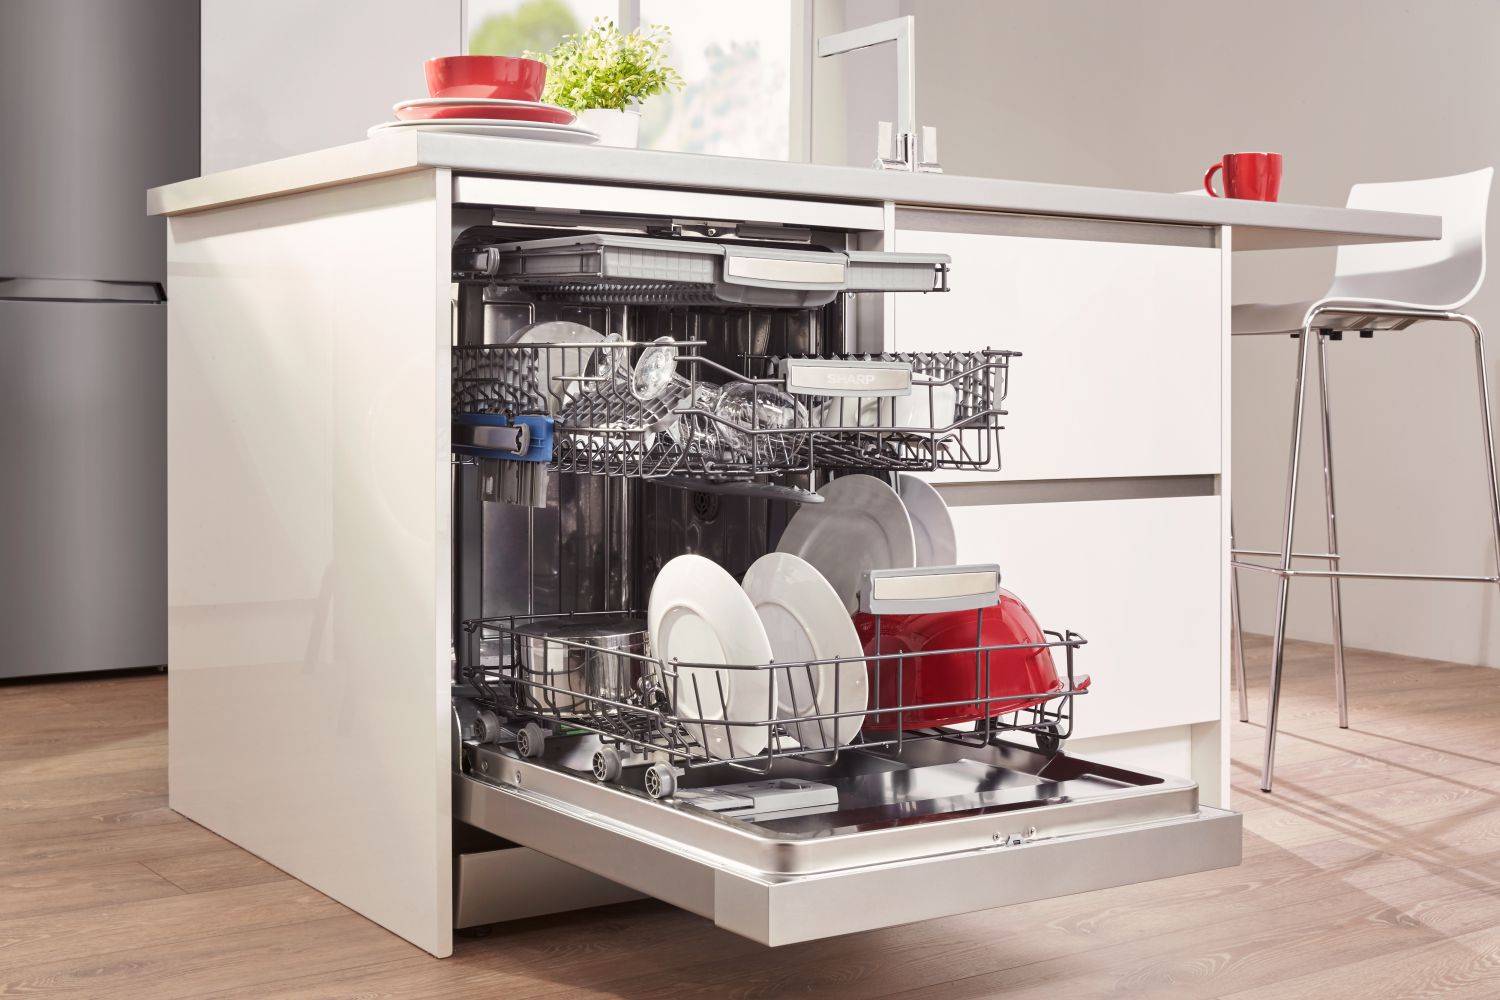 Отдельностоящие посудомоечные машины: ТОПы лучших моделей на сегодняшнем рынке